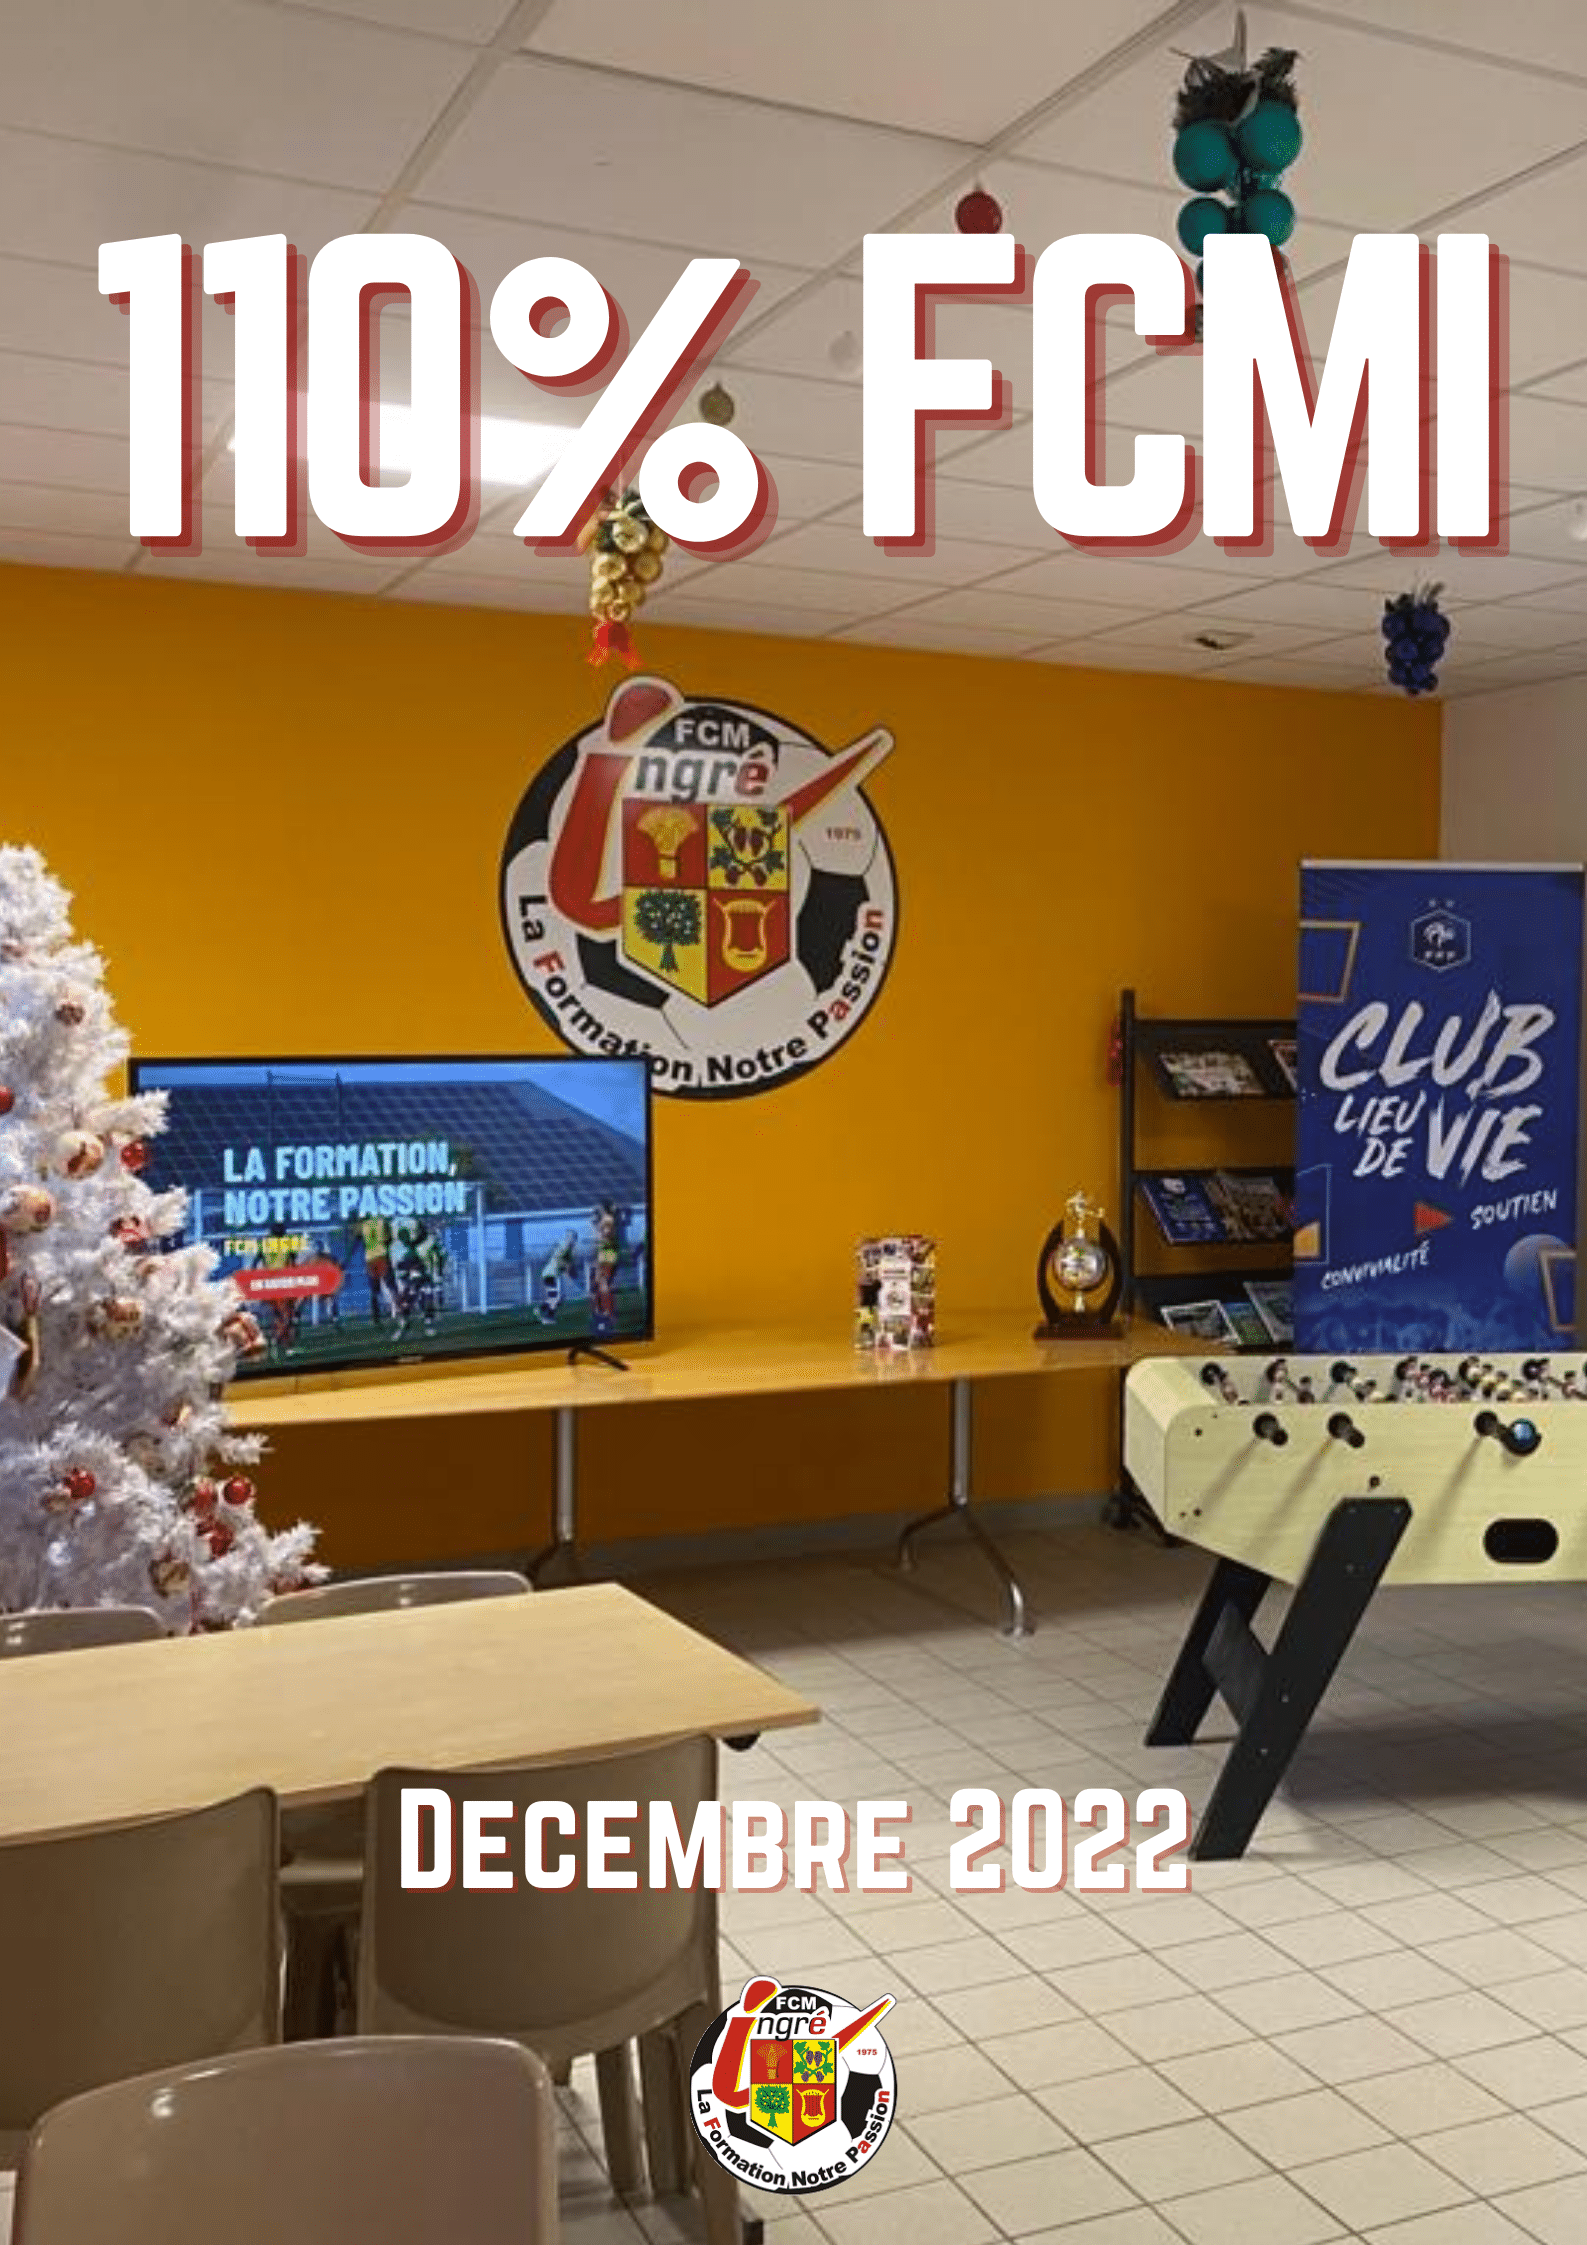 Magazine FCM Ingré - 110% FCMI